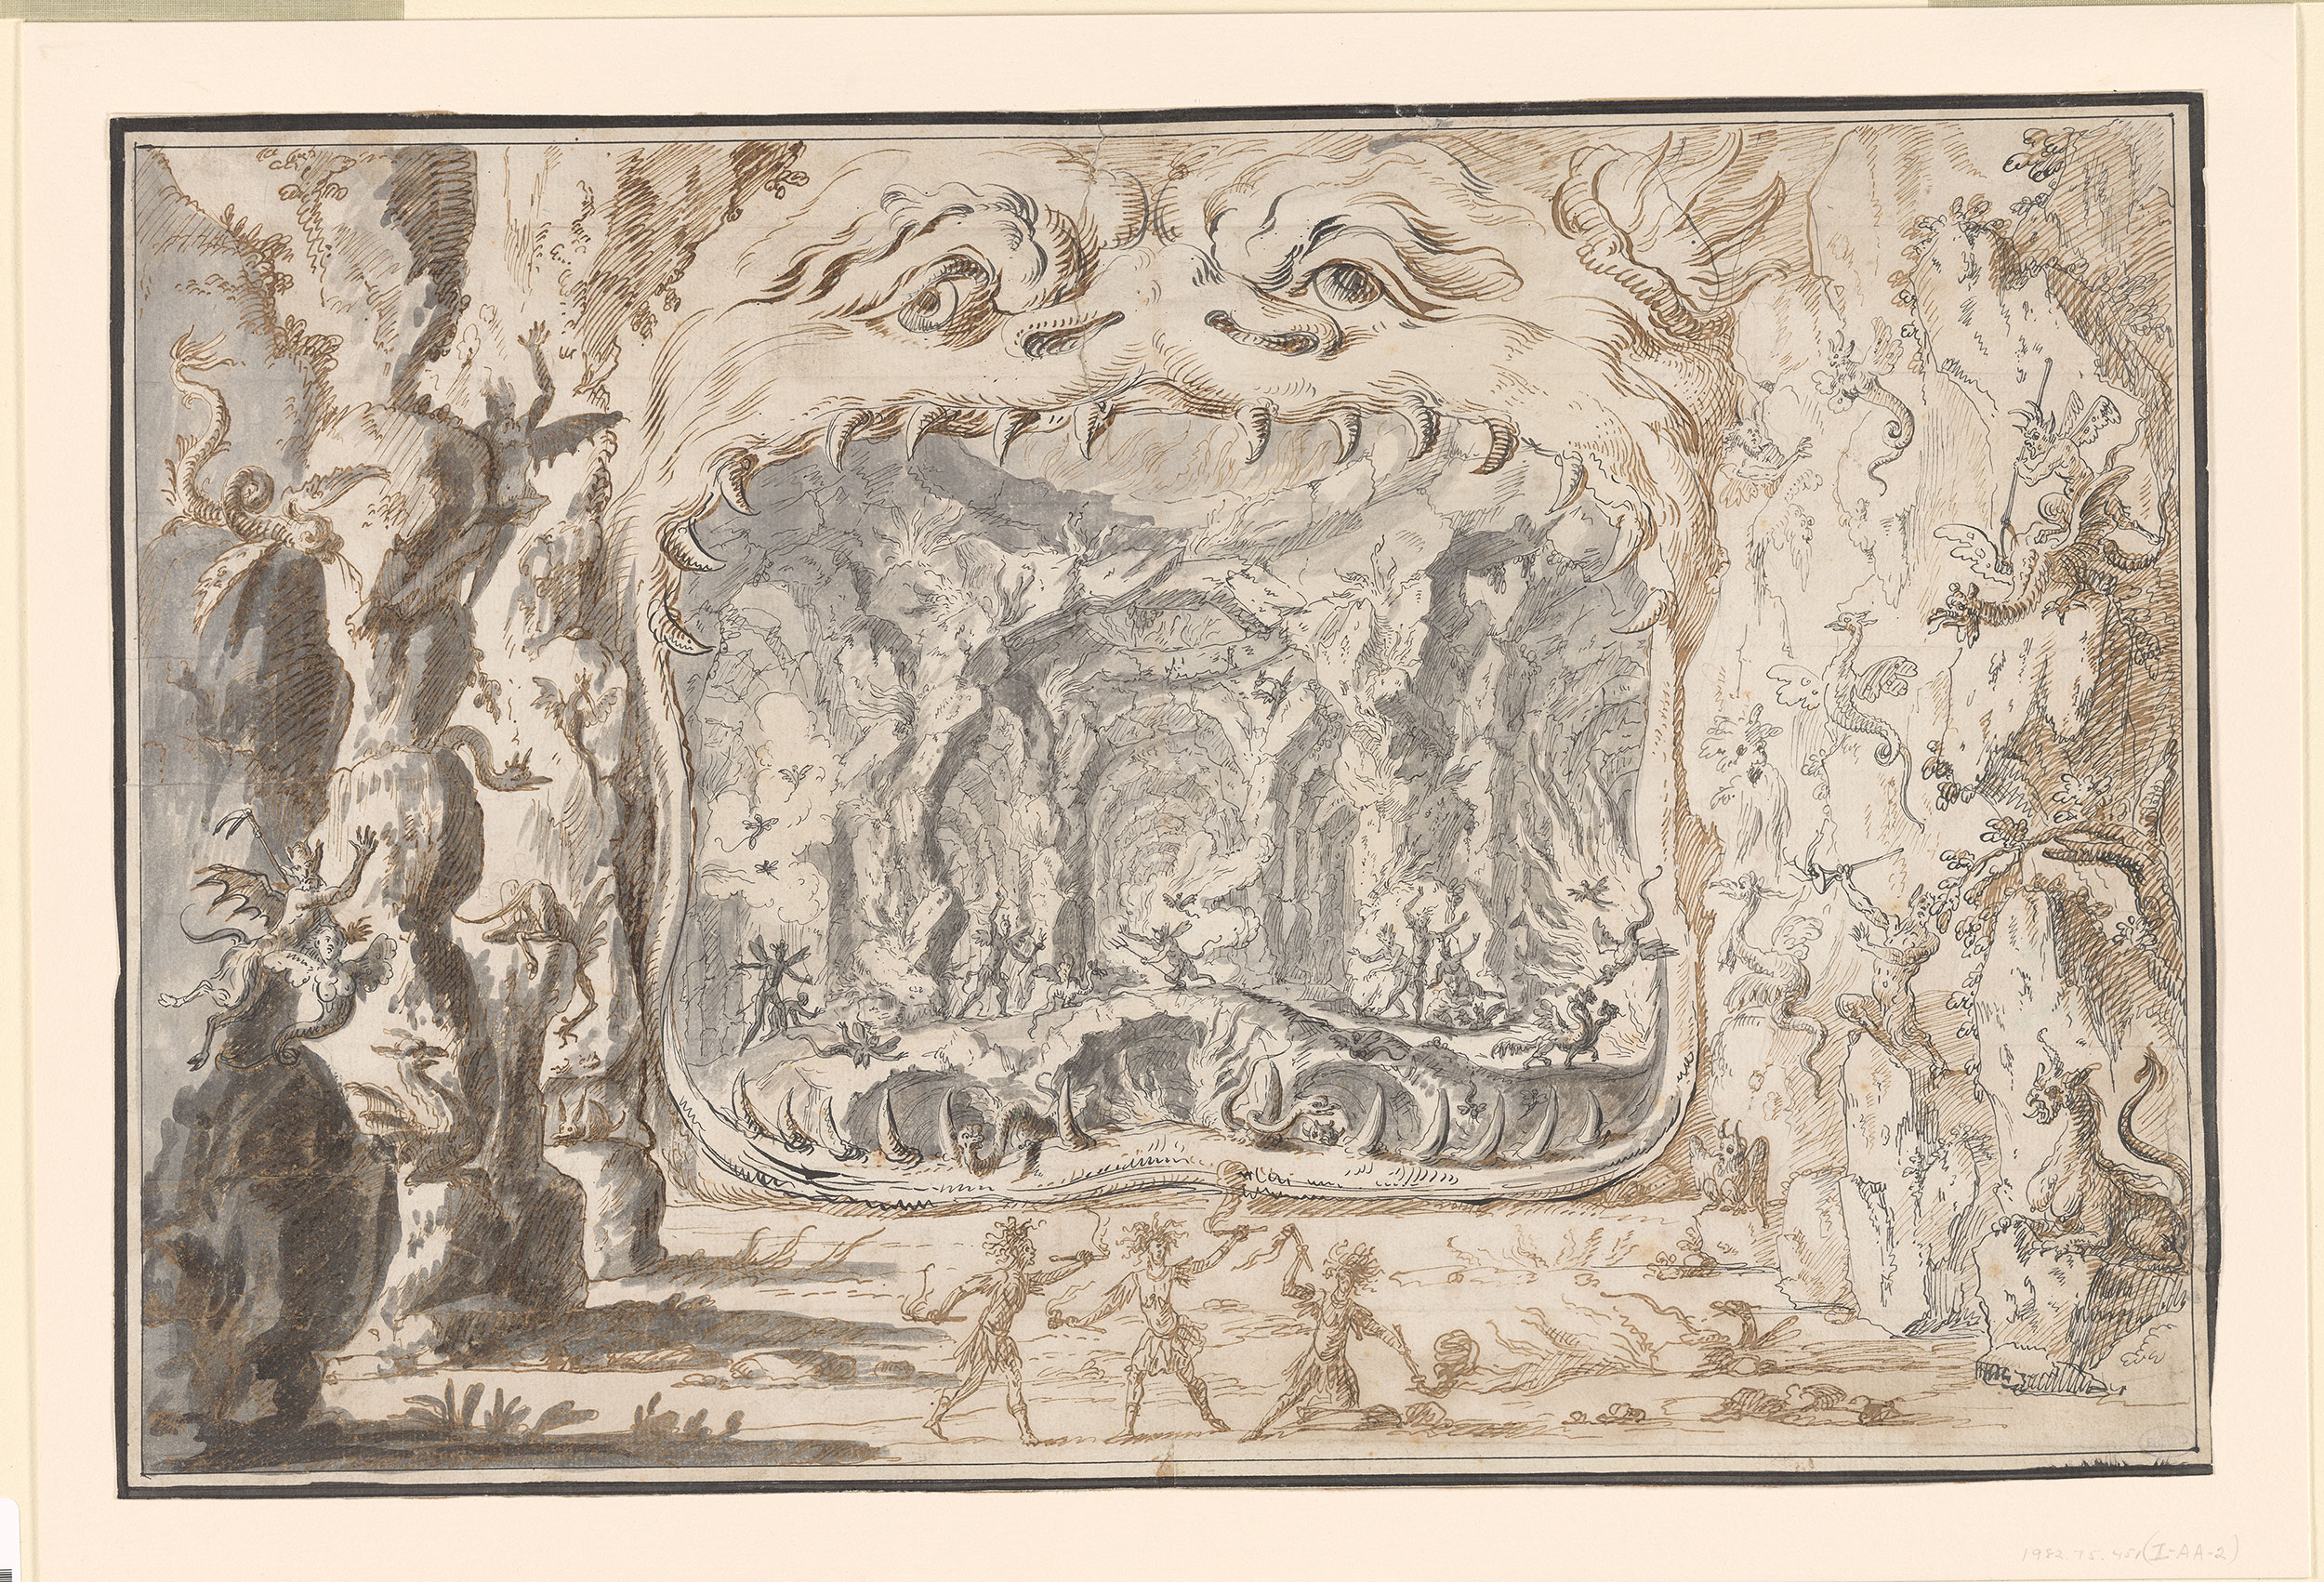 Giulio Parigi. Boca del infierno, ca. 1620. Morgan Library